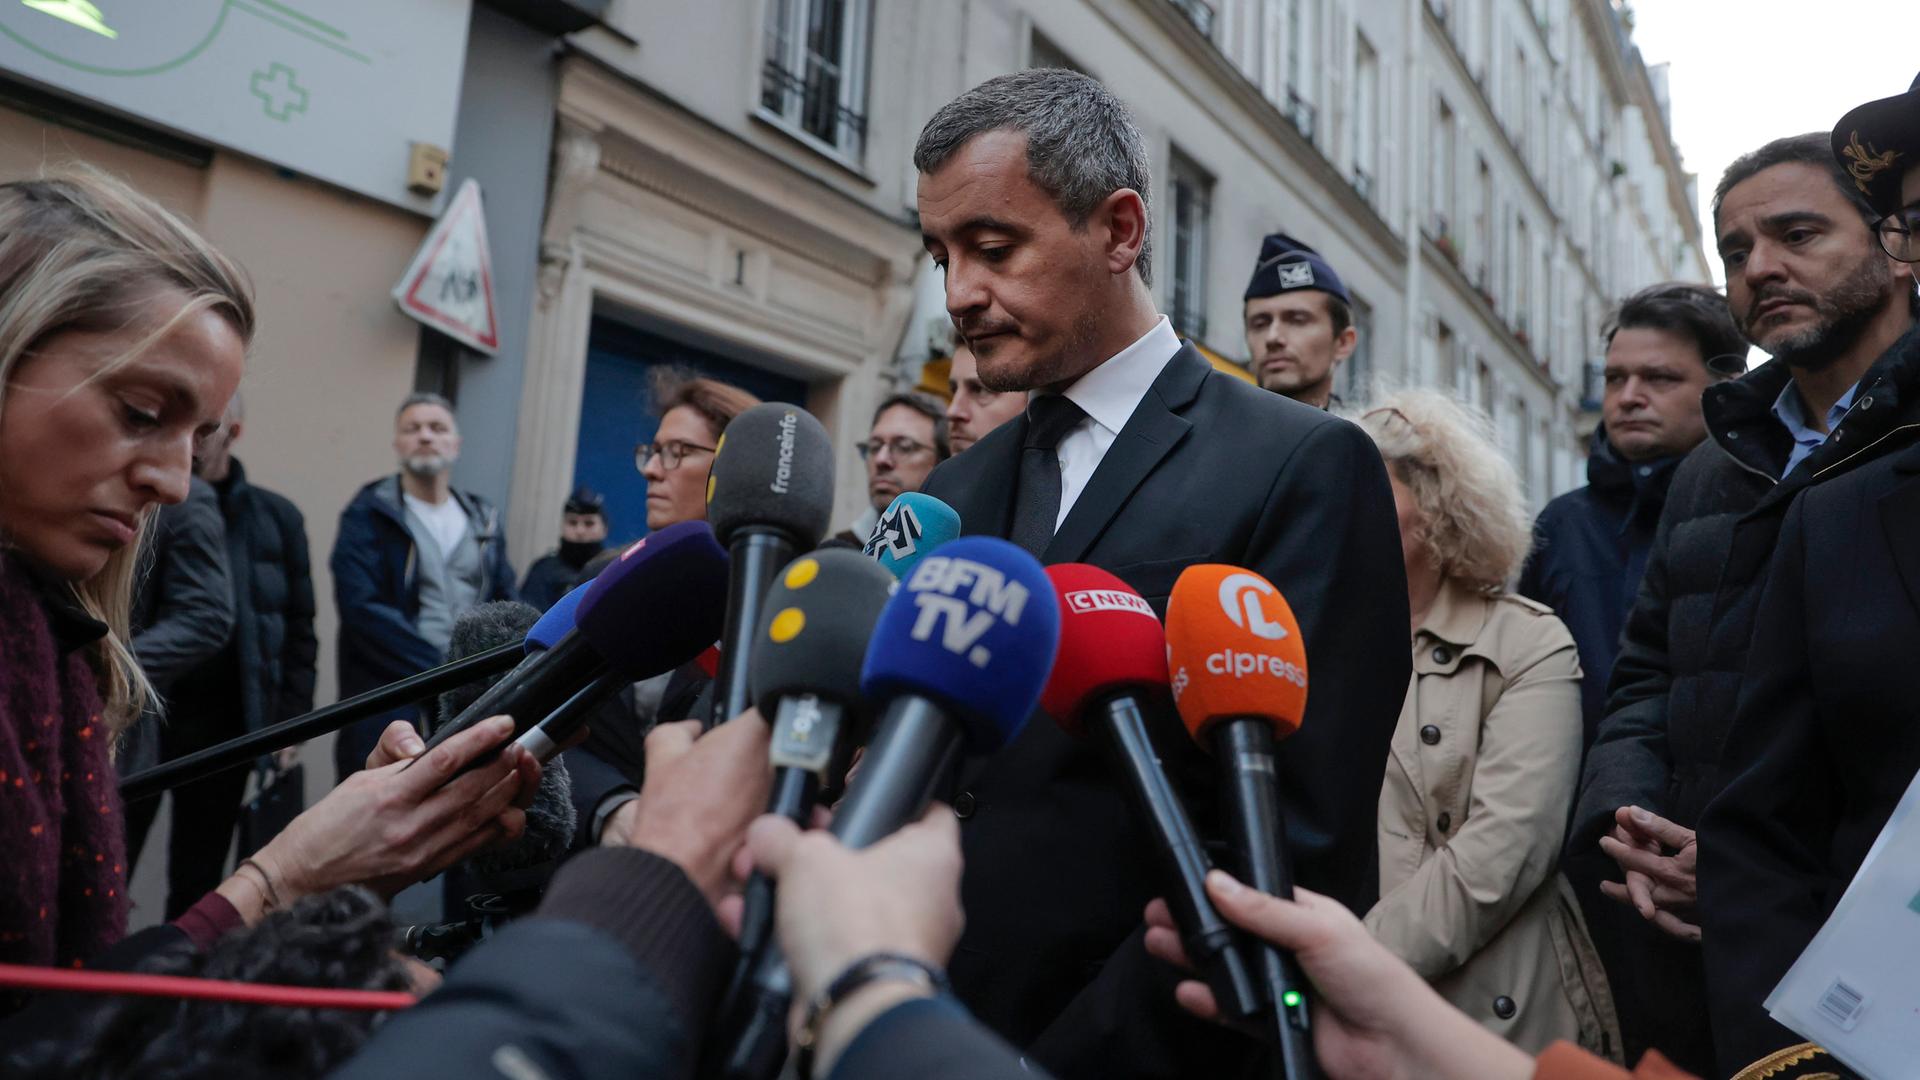 Der französische Innenminister Darmanin spricht mit Reportern auf einer Straße.